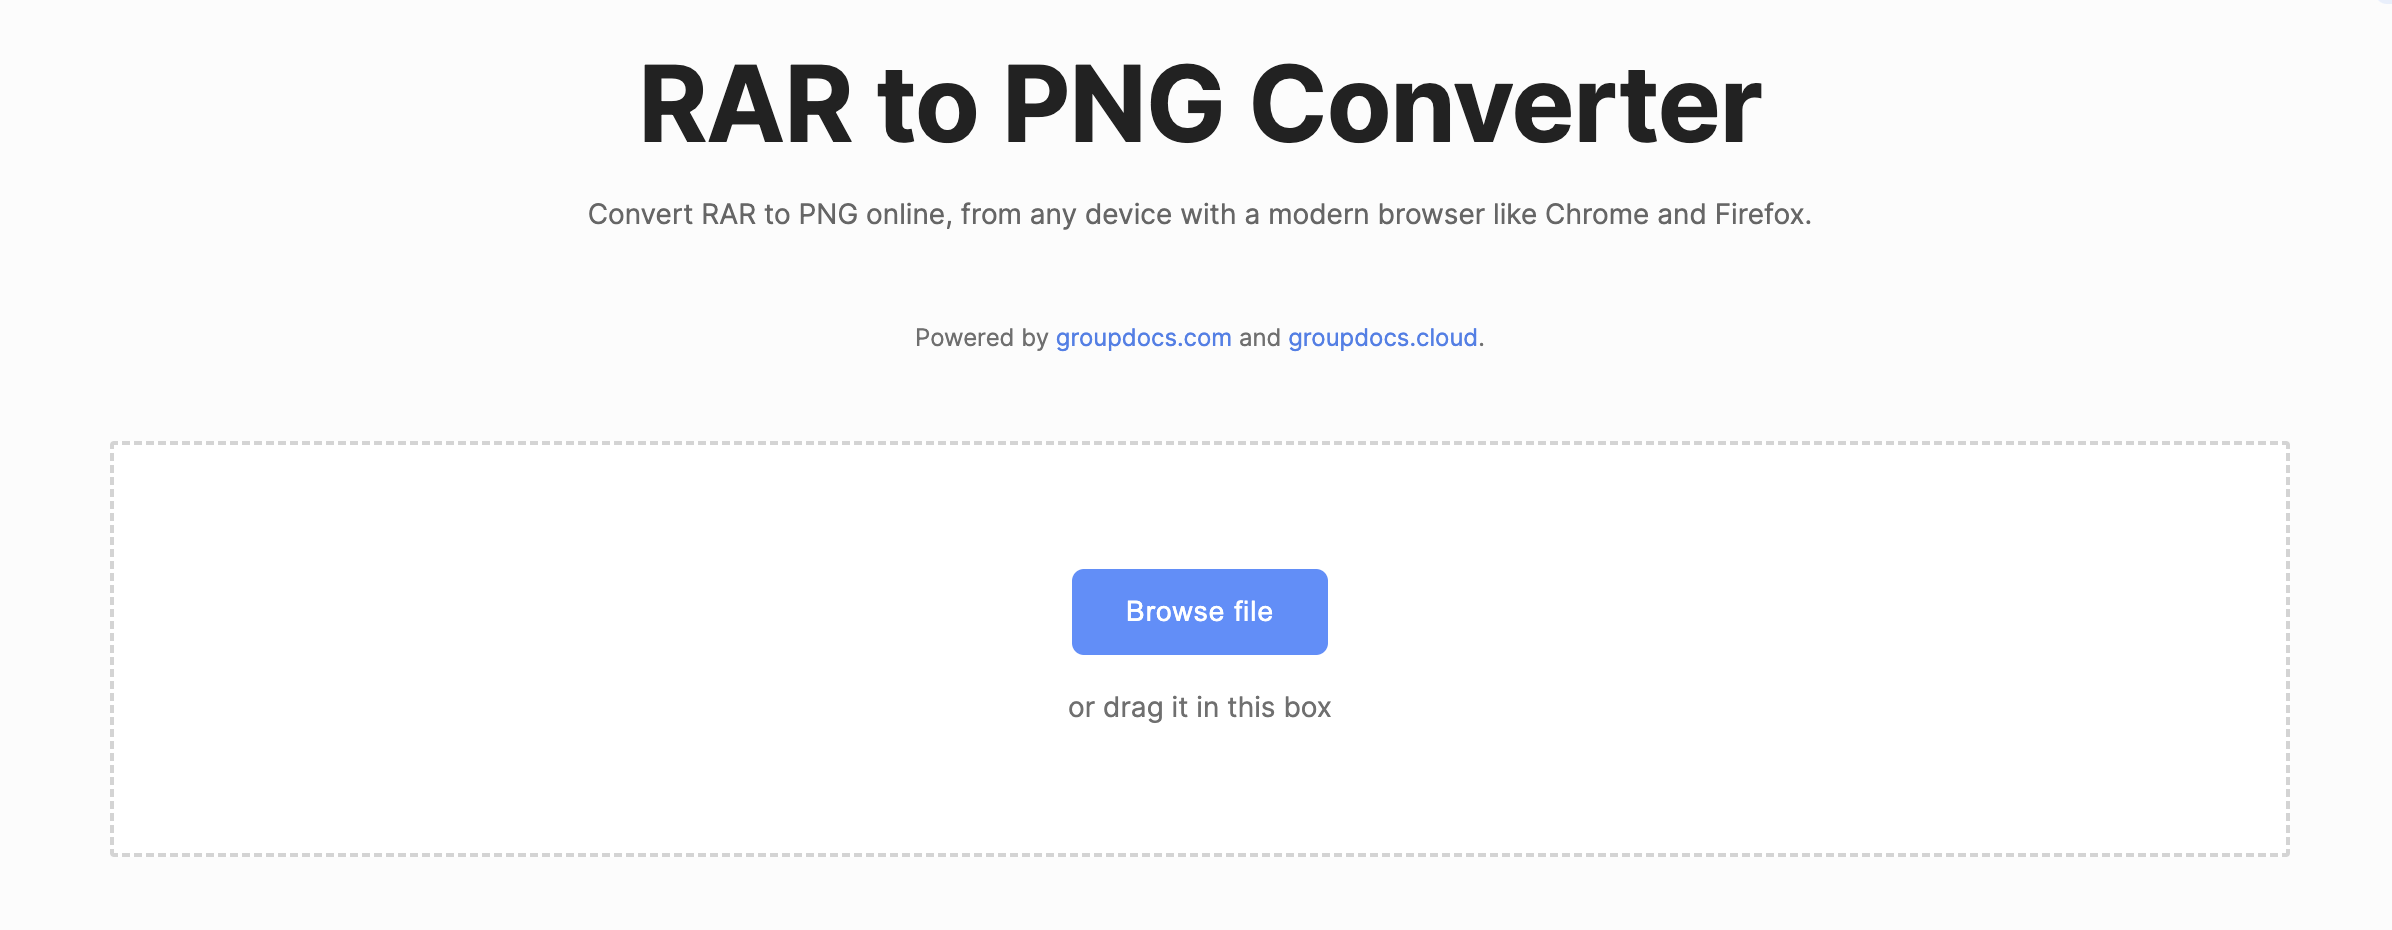 โปรแกรมแปลง rar เป็น PNG ออนไลน์